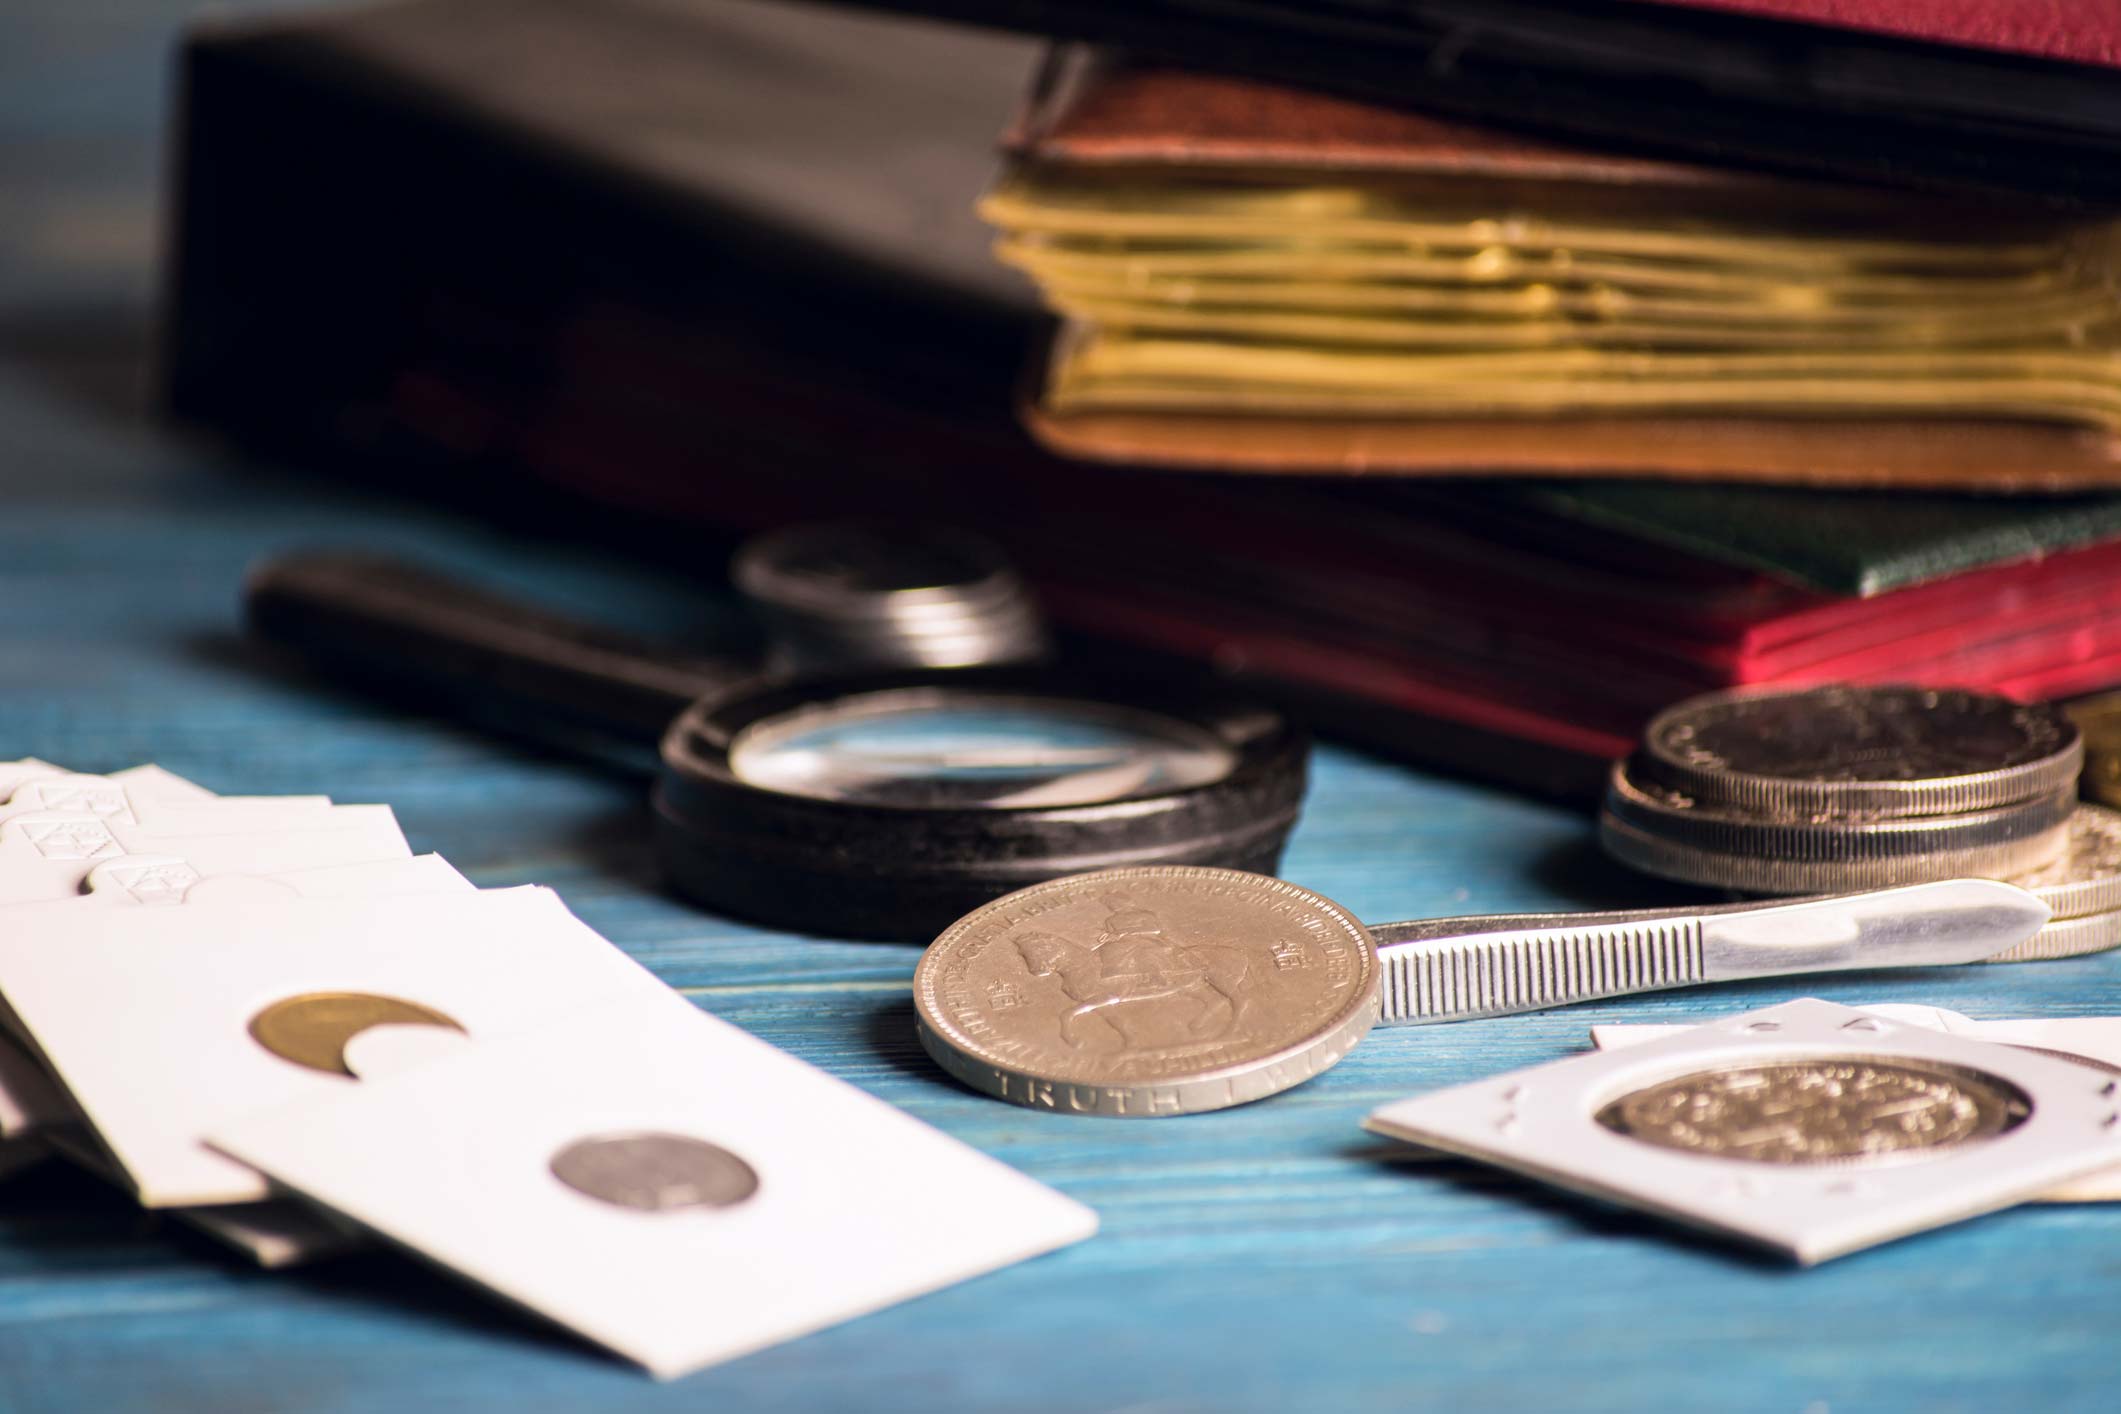 Coin collection - Edmonton Coin Club